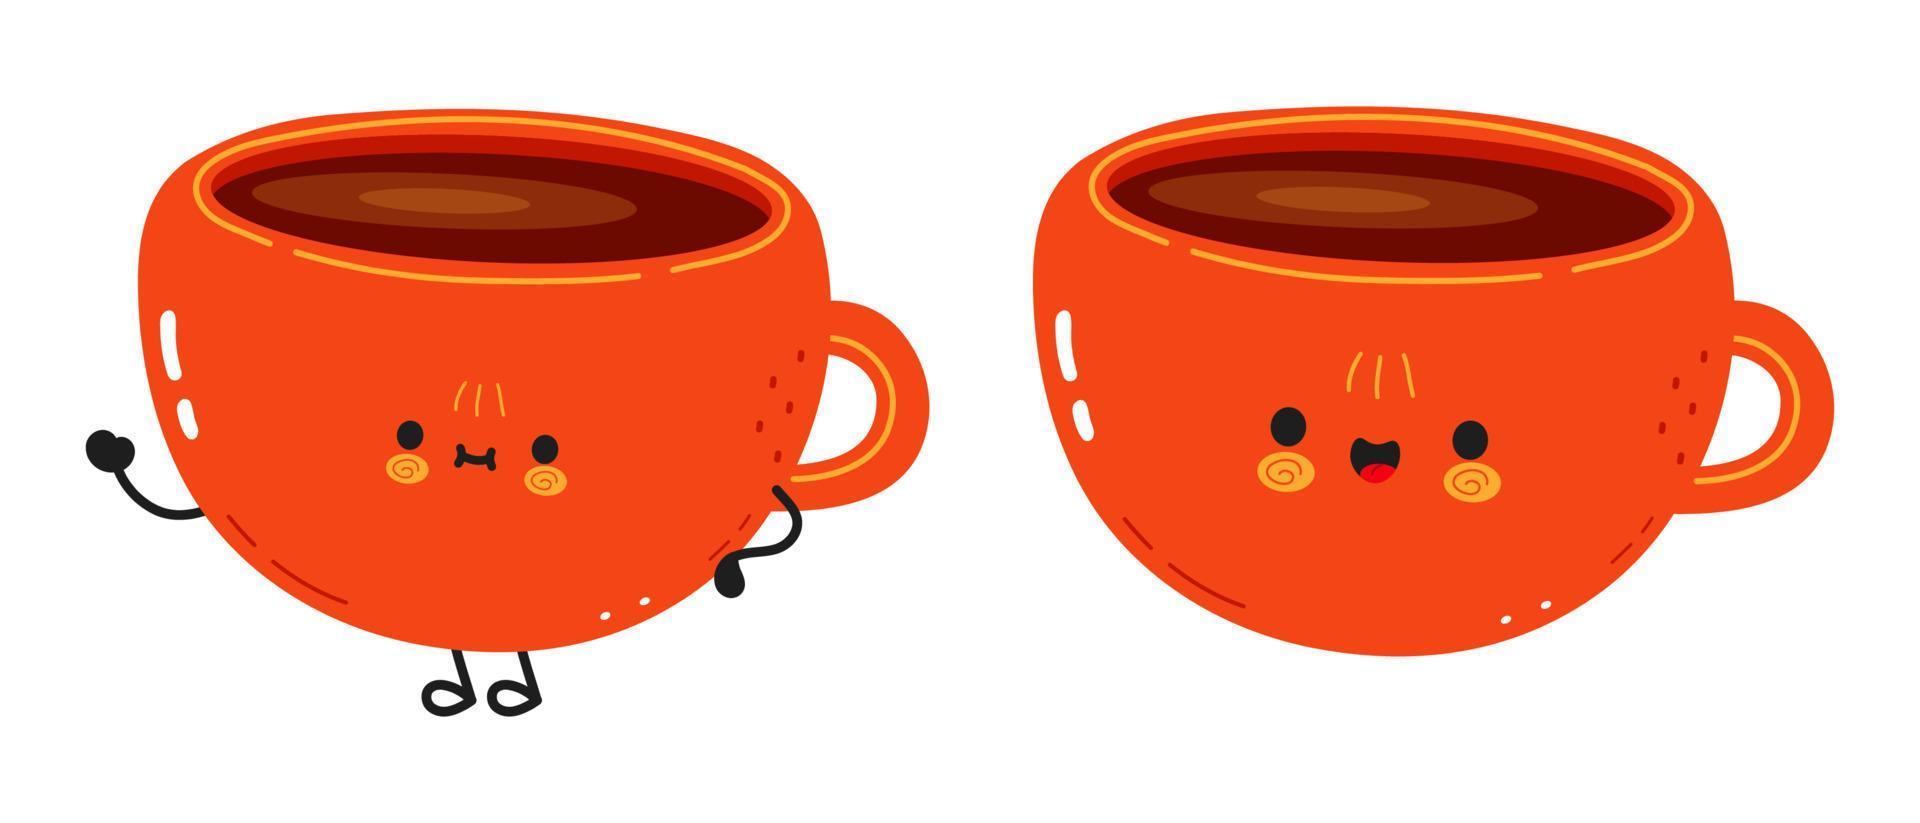 schattig grappig kopje koffie karakter. vector hand getekend cartoon kawaii karakter illustratie pictogram. geïsoleerd op een witte achtergrond. kopje koffie karakter concept